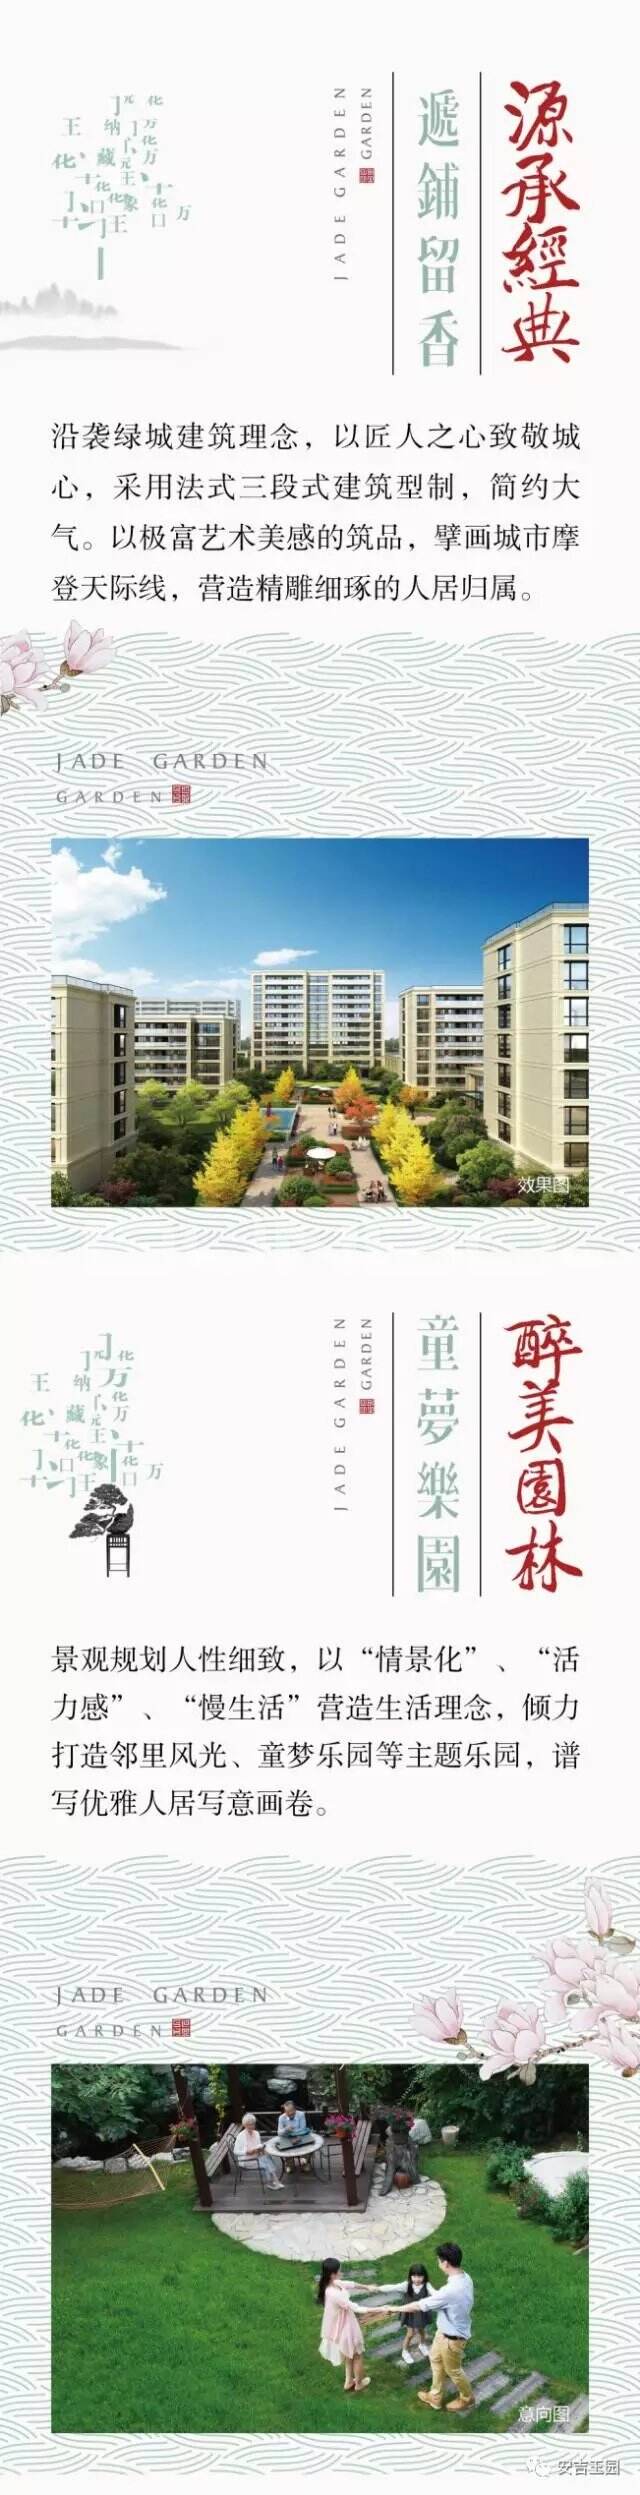 安吉玉园微信，本埠广告2017作品